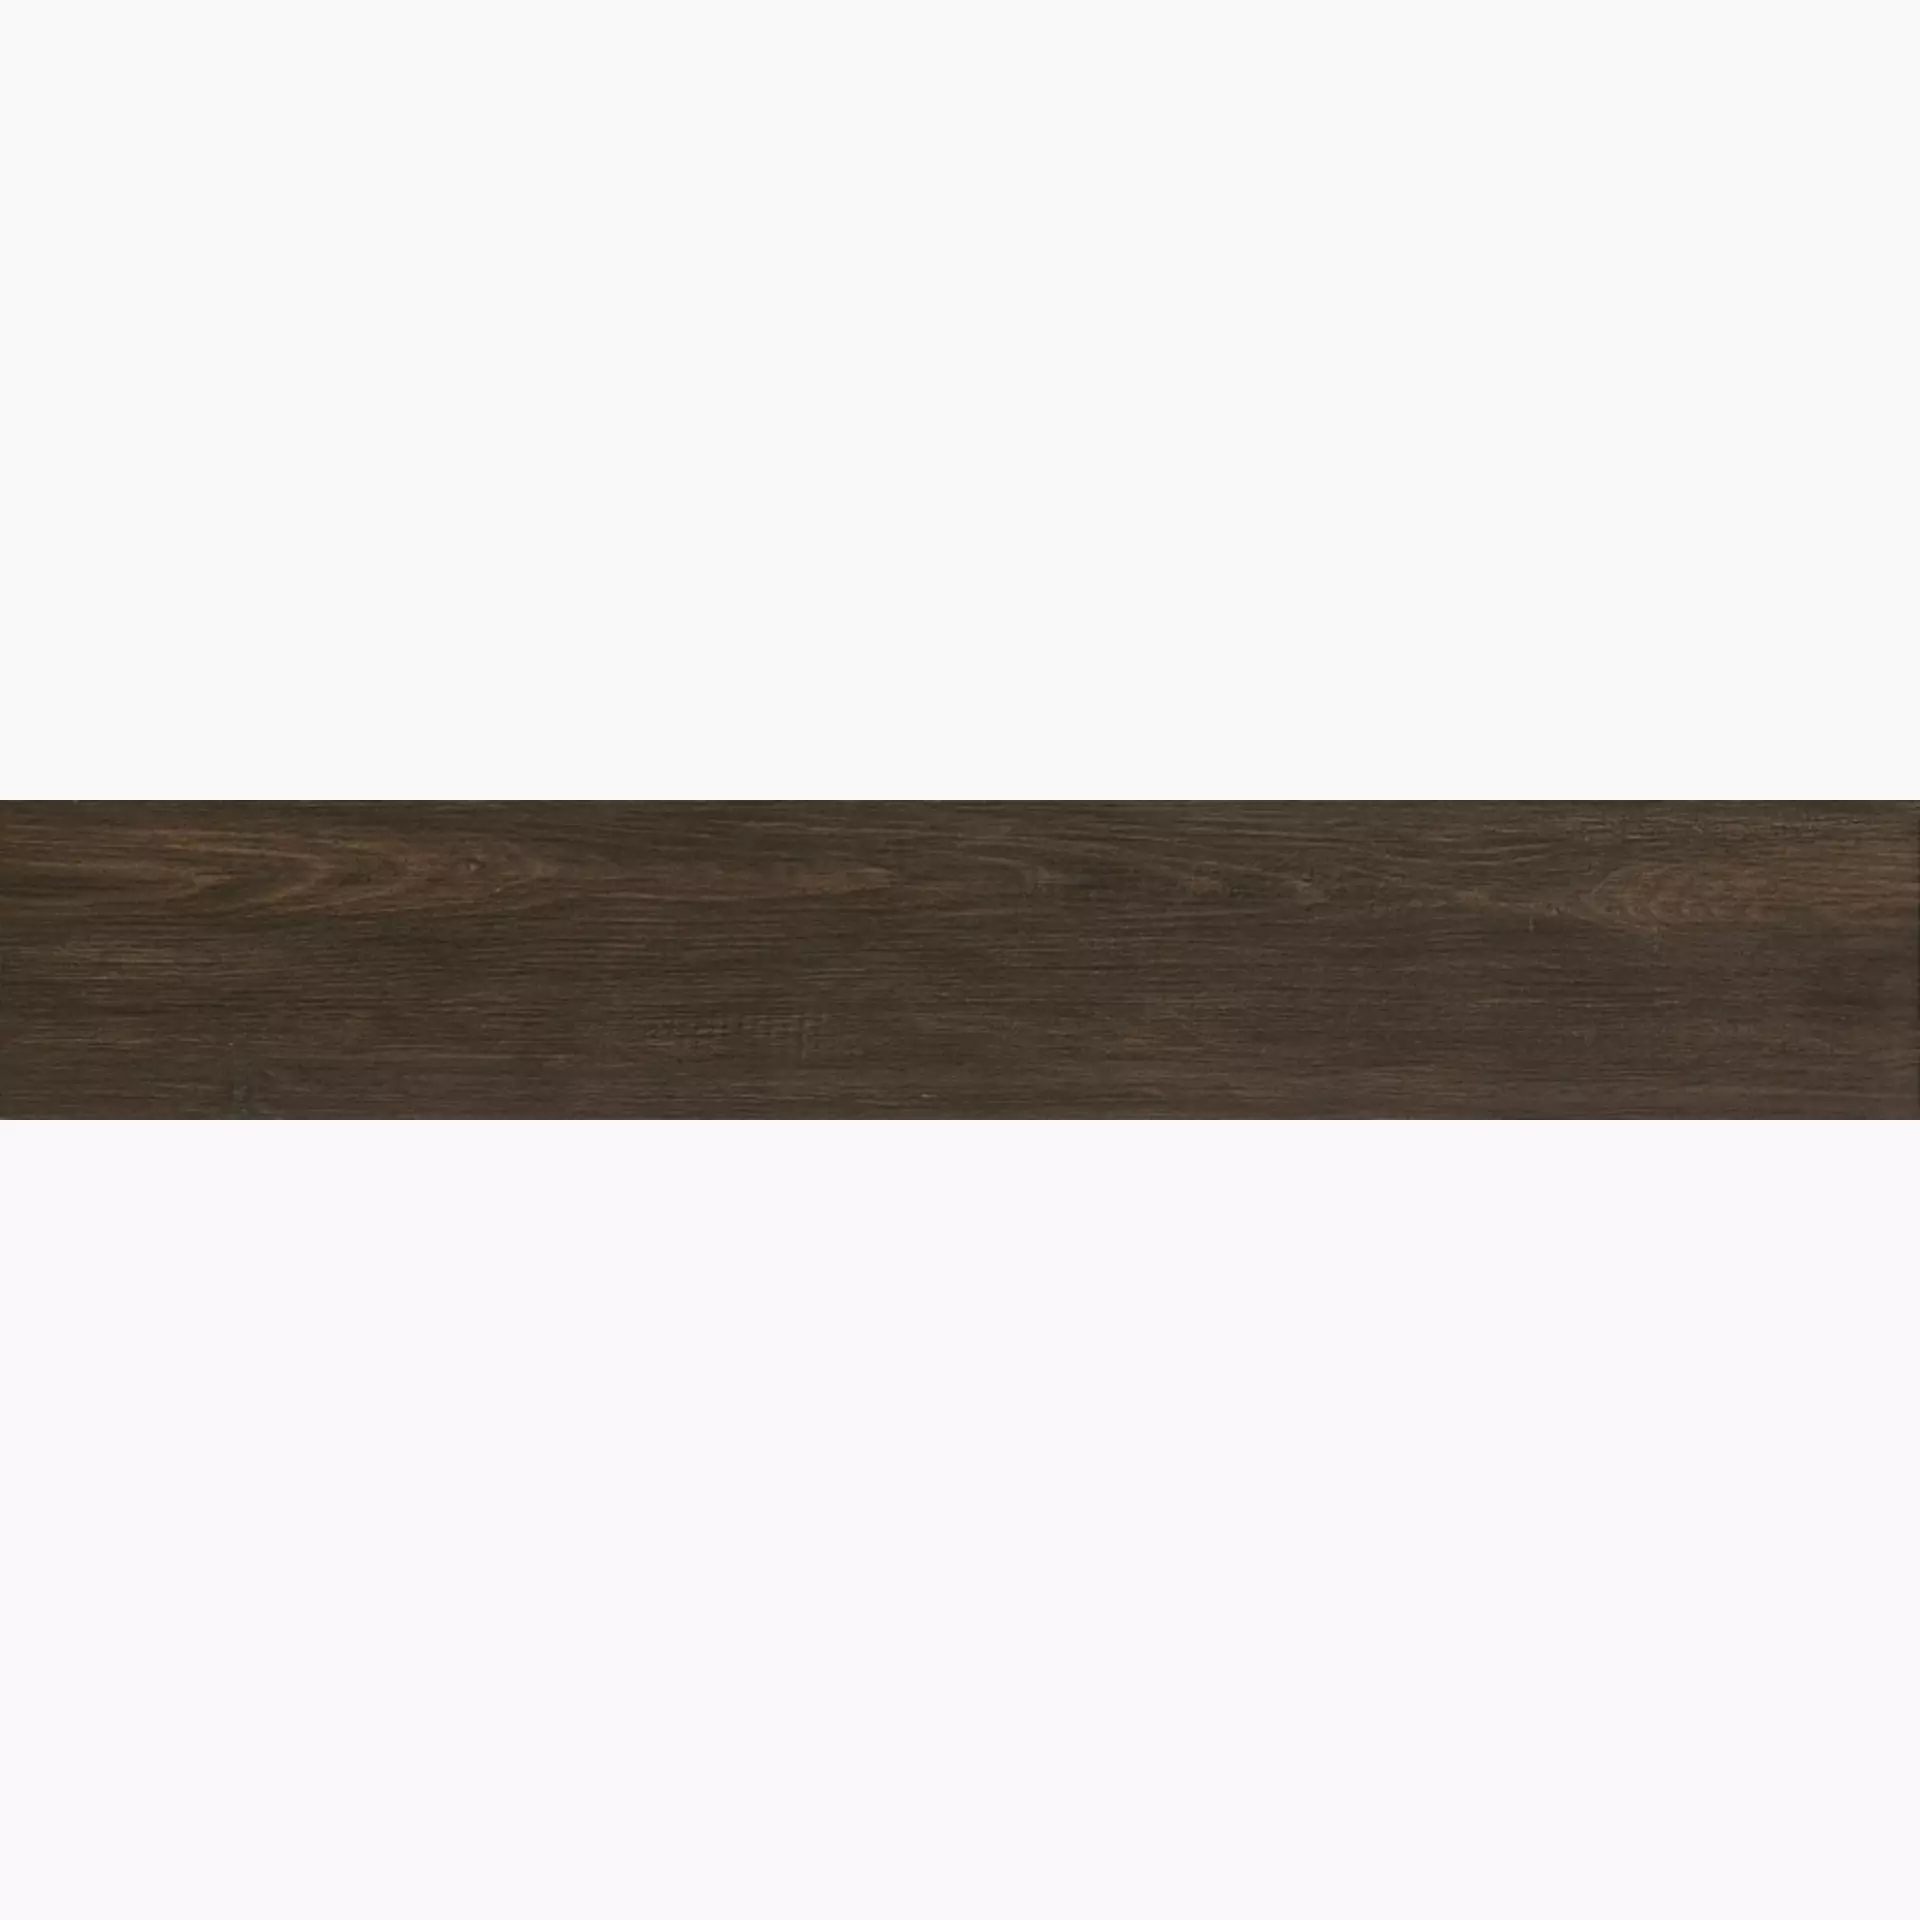 Iris E-Wood Black Lappato Vintage 894020 15x90cm 9mm